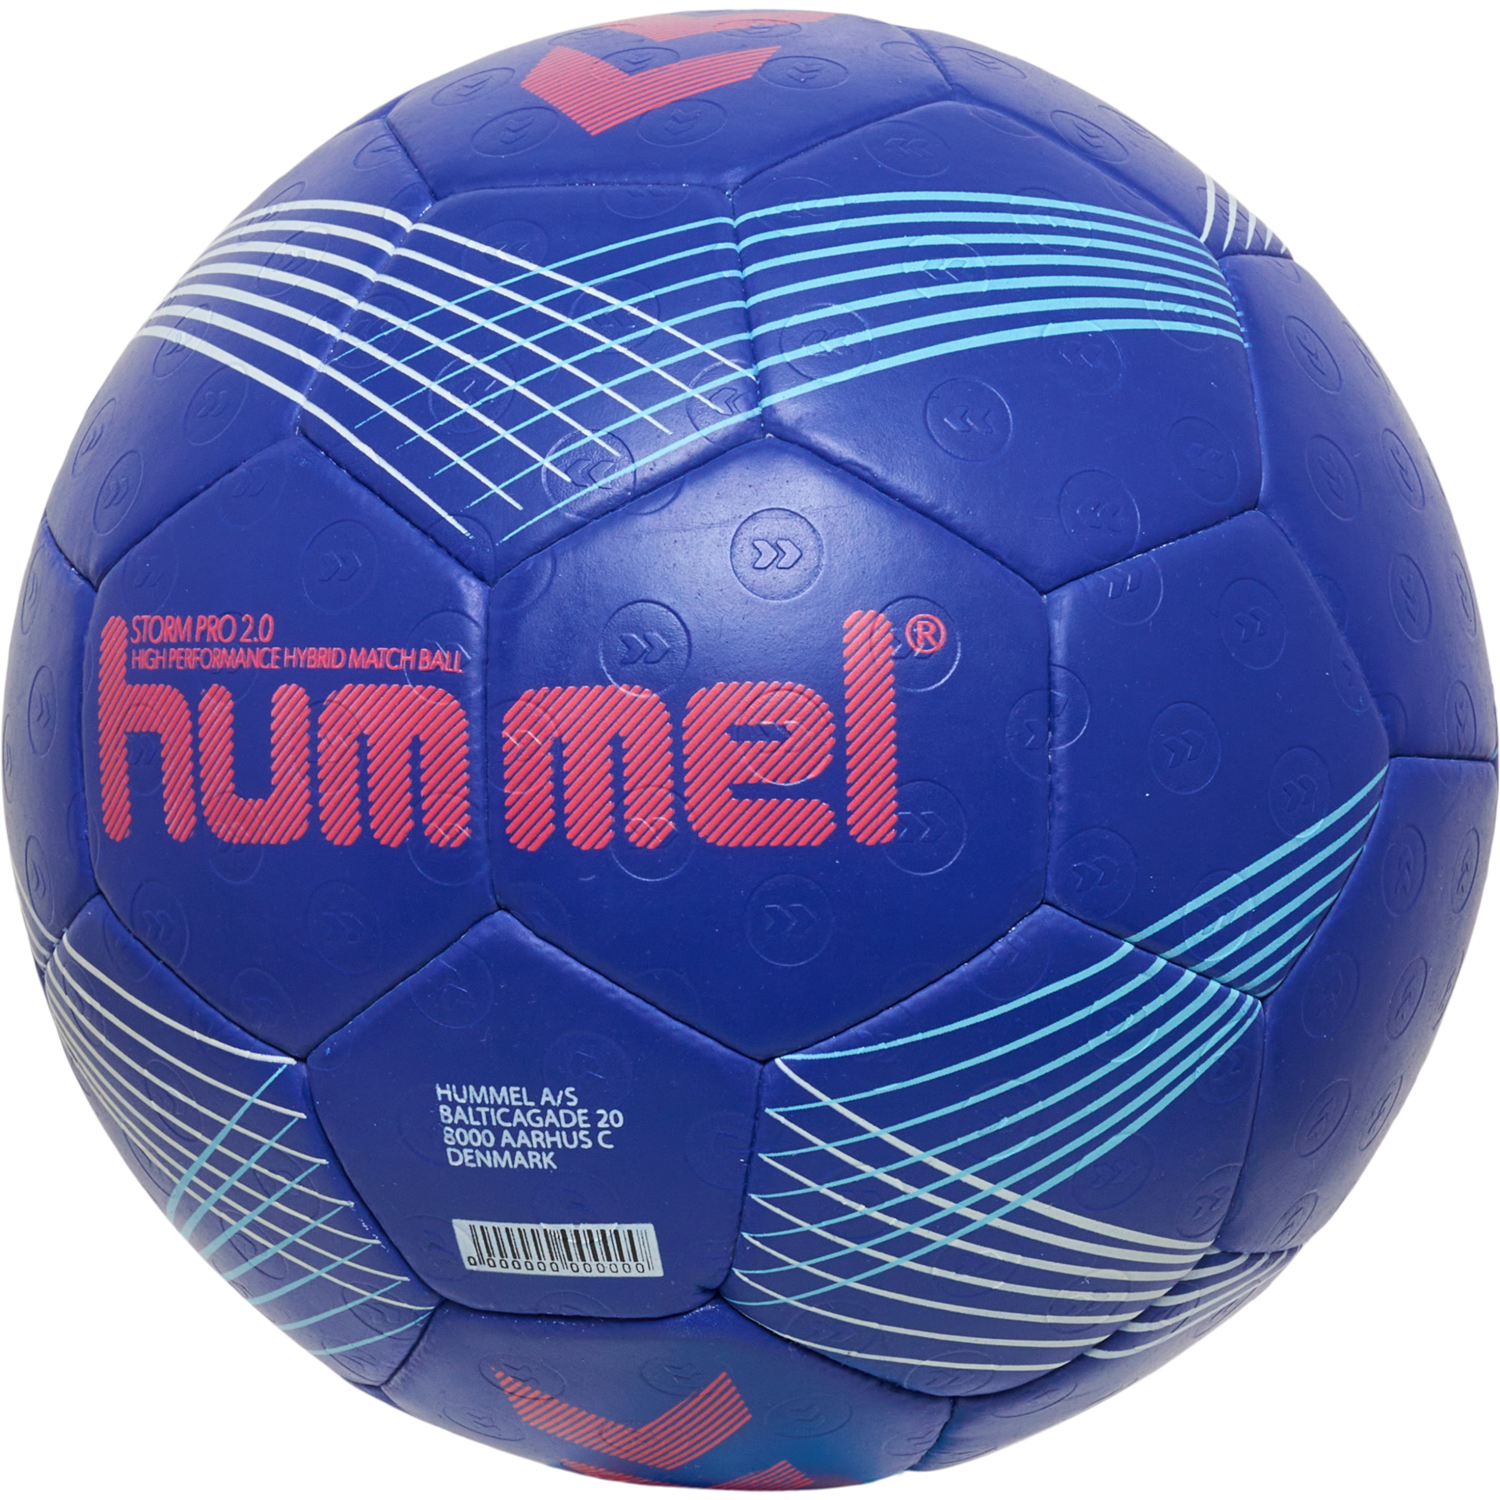 Hummel Handball Storm Pro 2.0